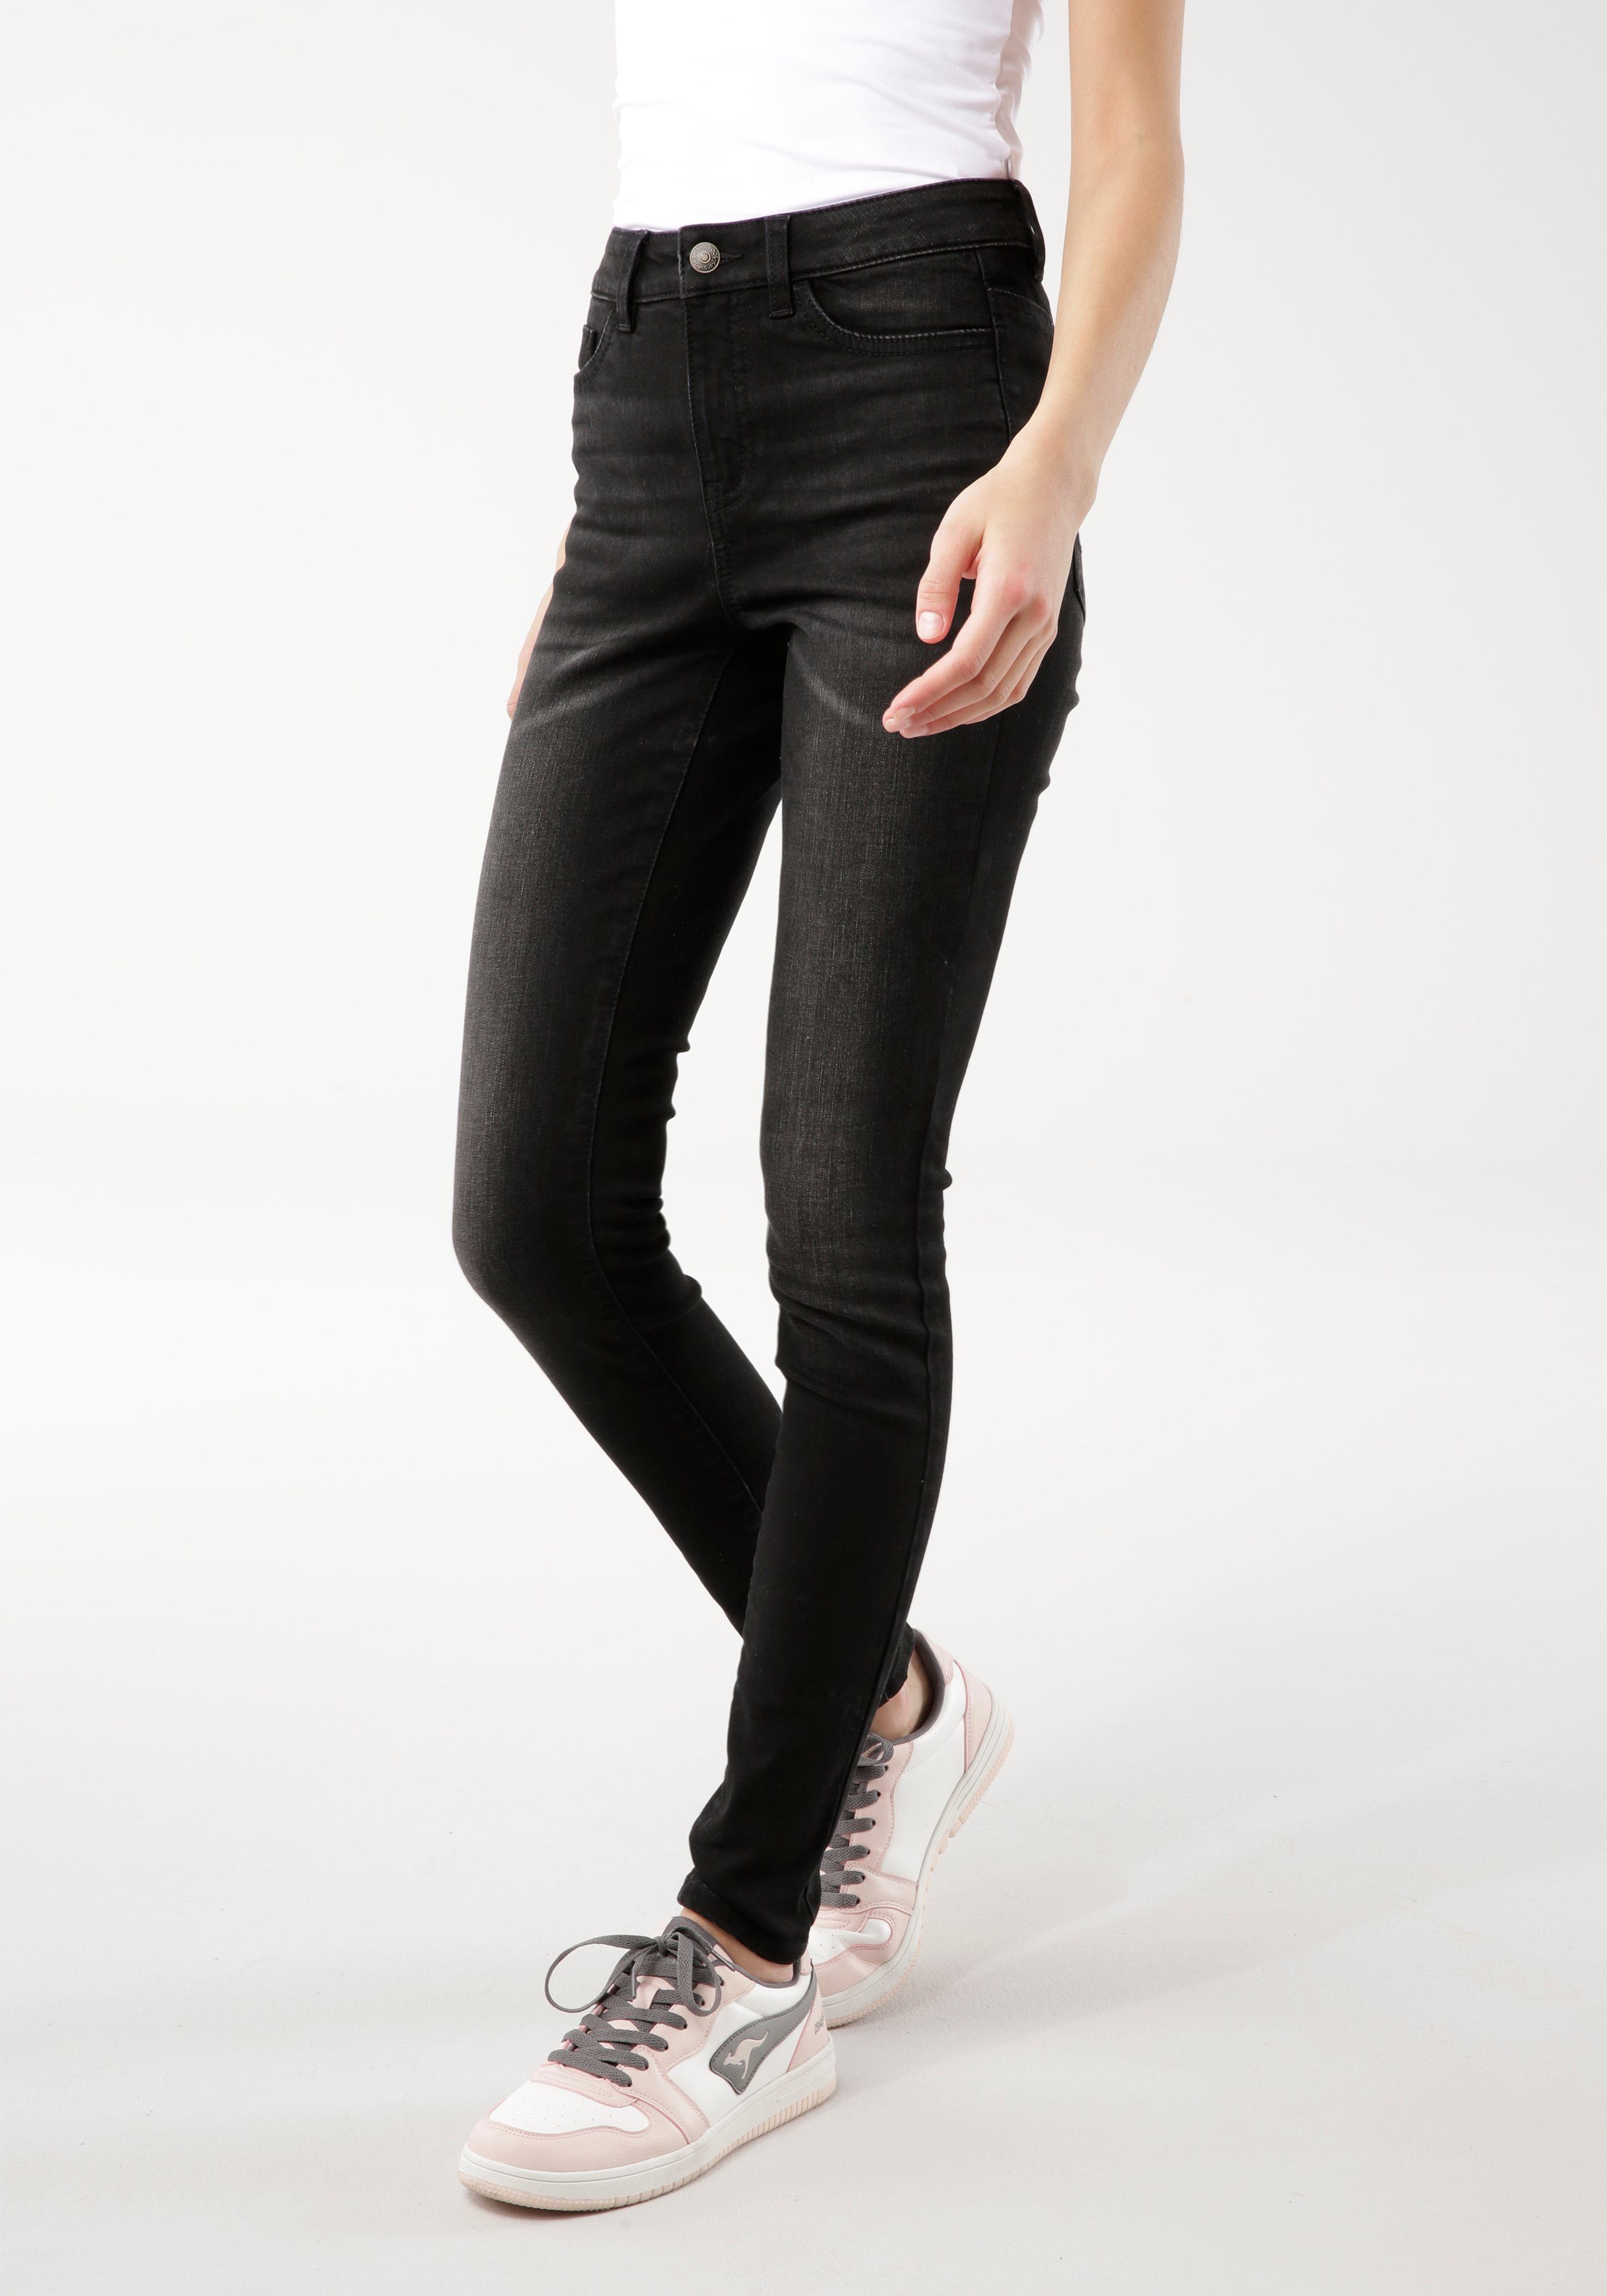 Neuzugänge KangaROOS 5-Pocket-Jeans SUPER mit used-Effekt RISE black-used SKINNY HIGH